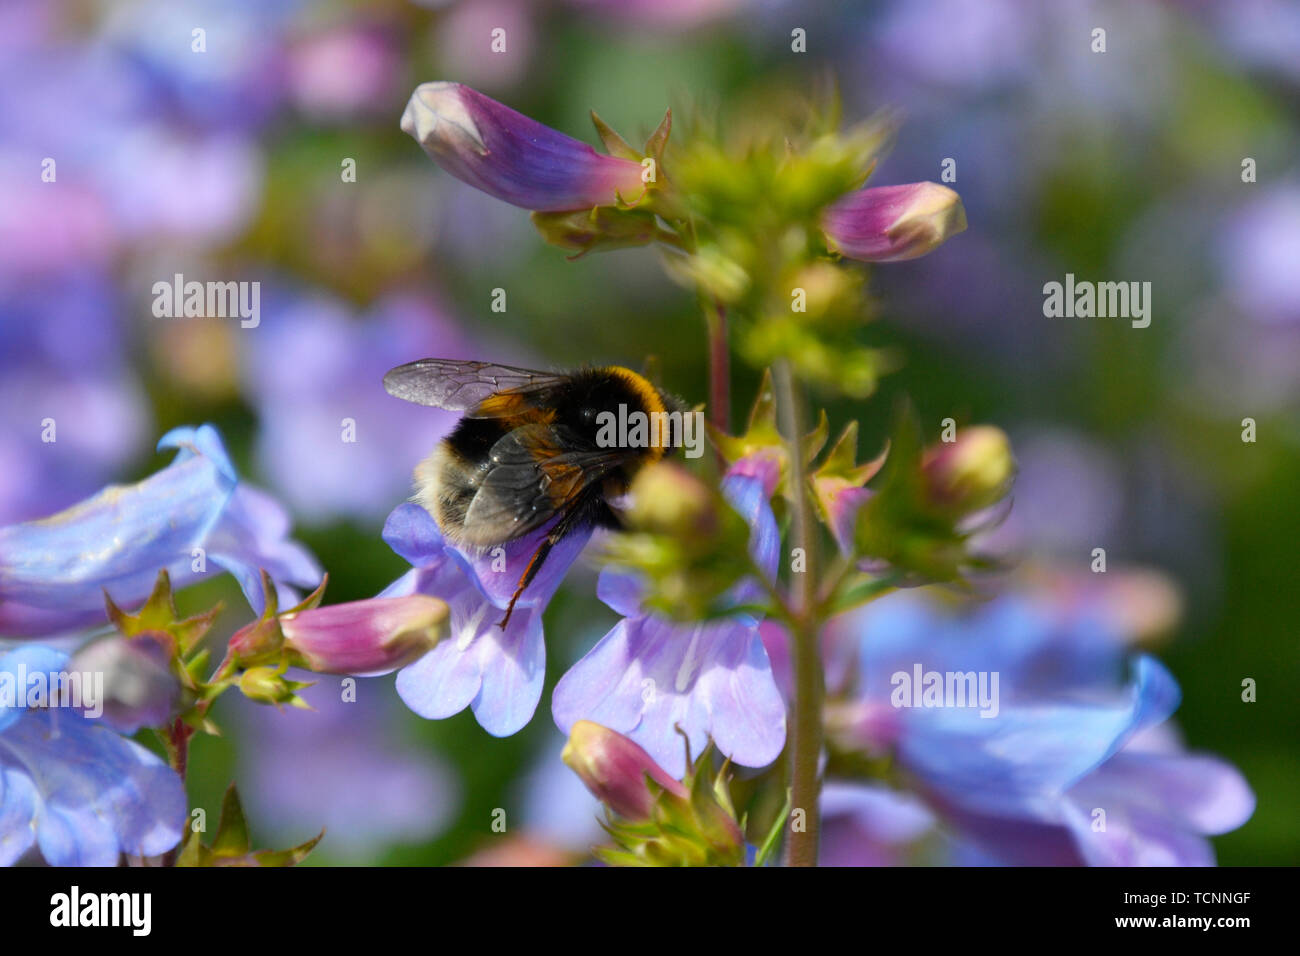 Bumble bee on mauve flowers in Buckinghamshire, UK Stock Photo